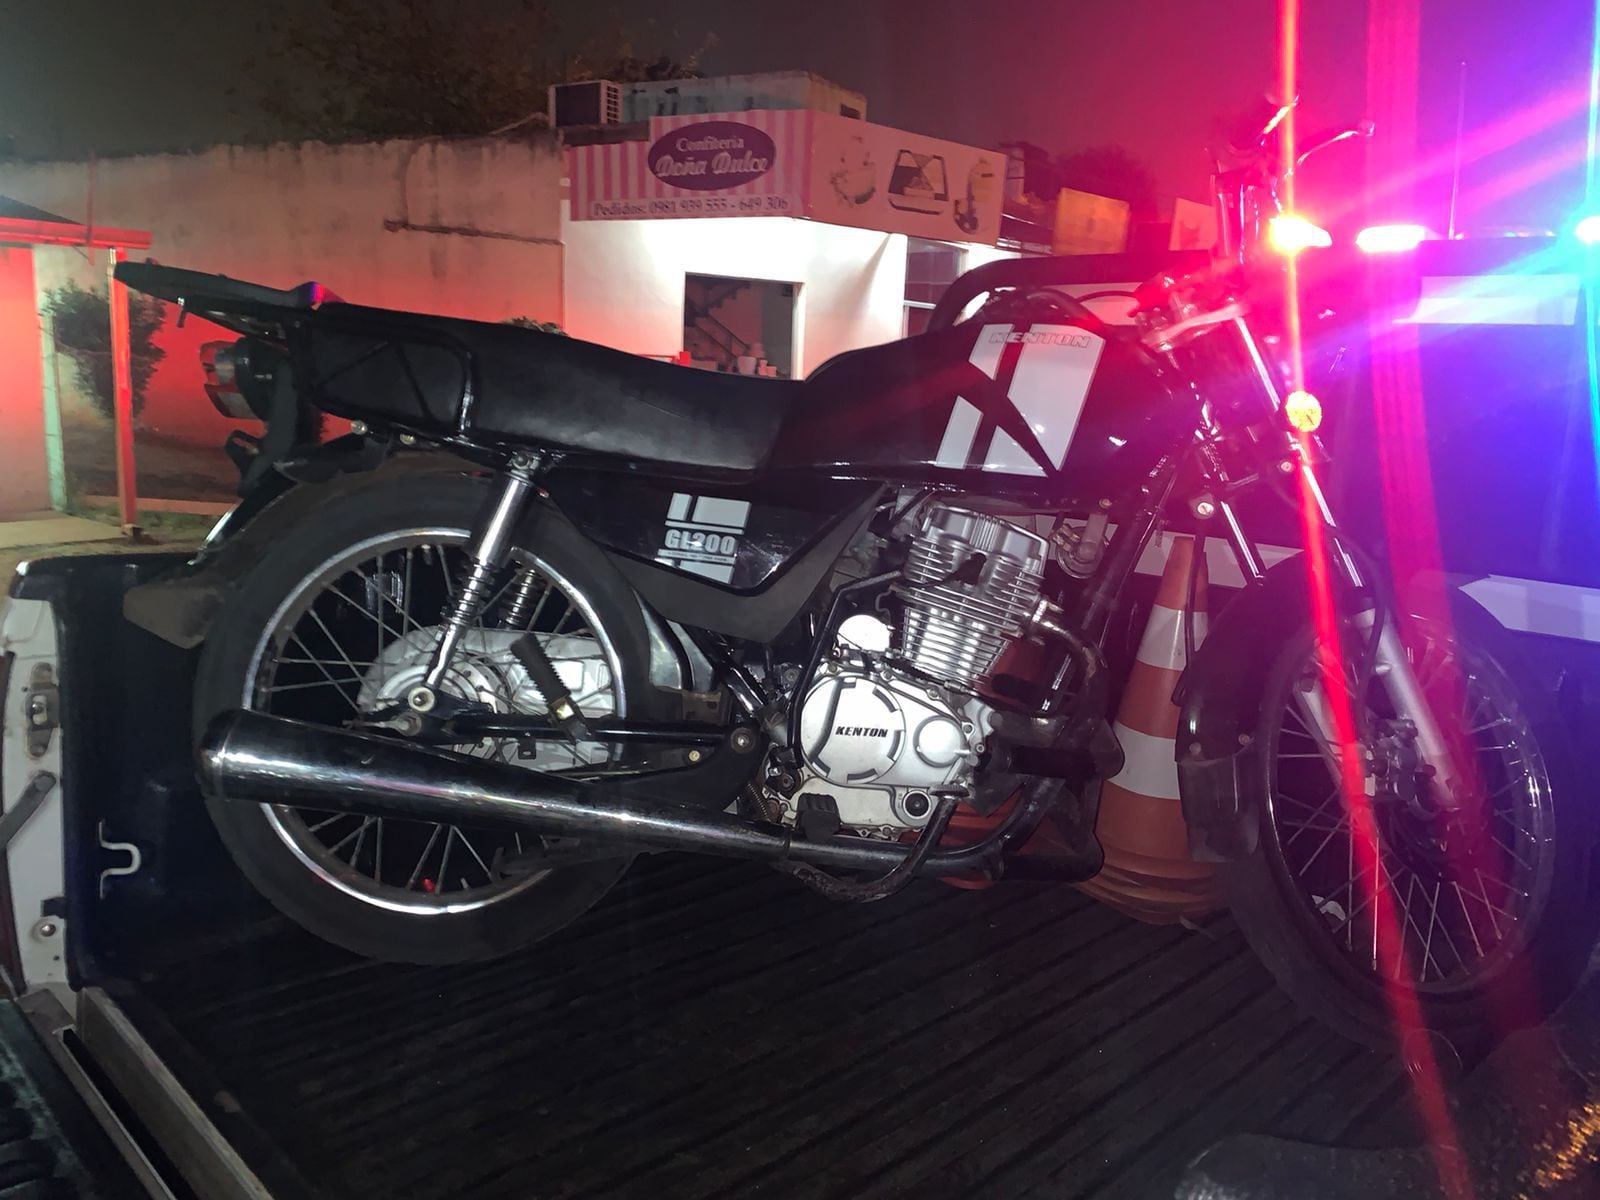 Motocicleta recuperada tras robo.